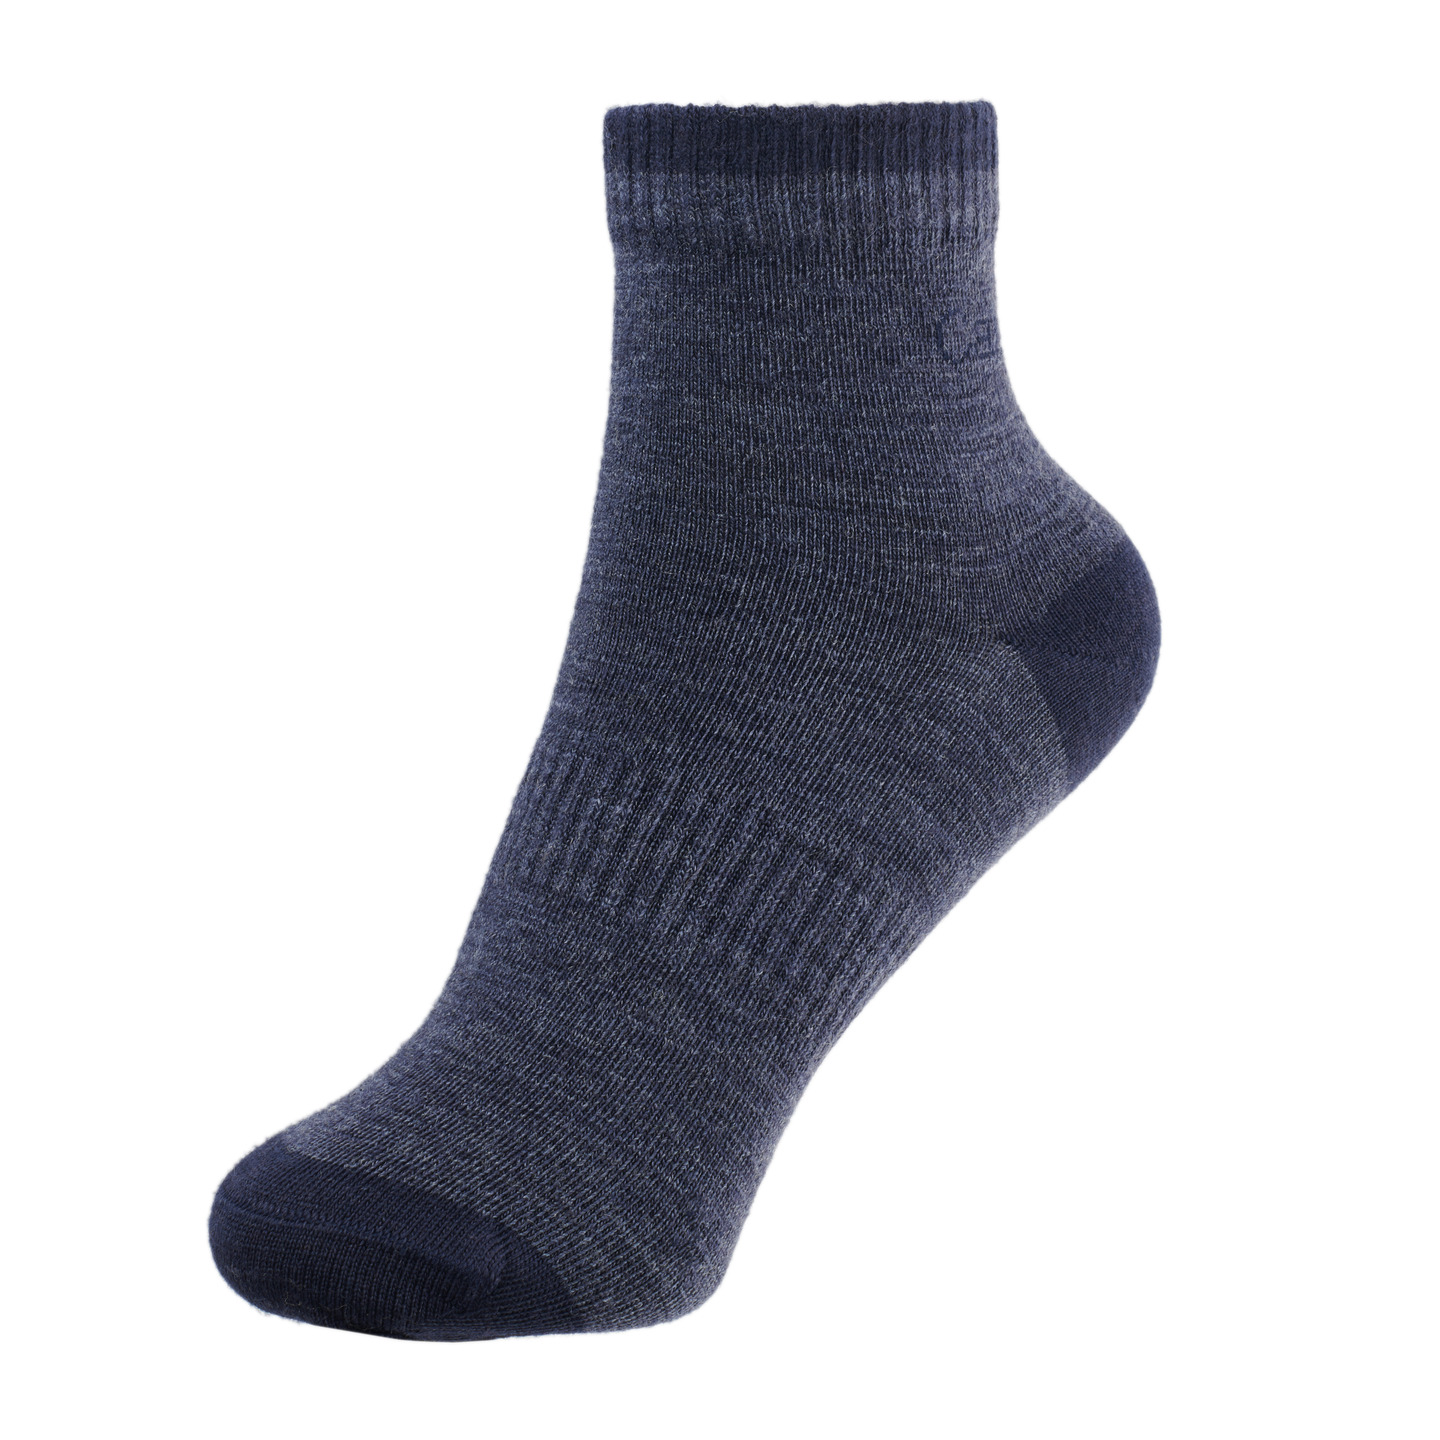 The Backs Merino Wool Everyday Socks, 3 Pair Bundle